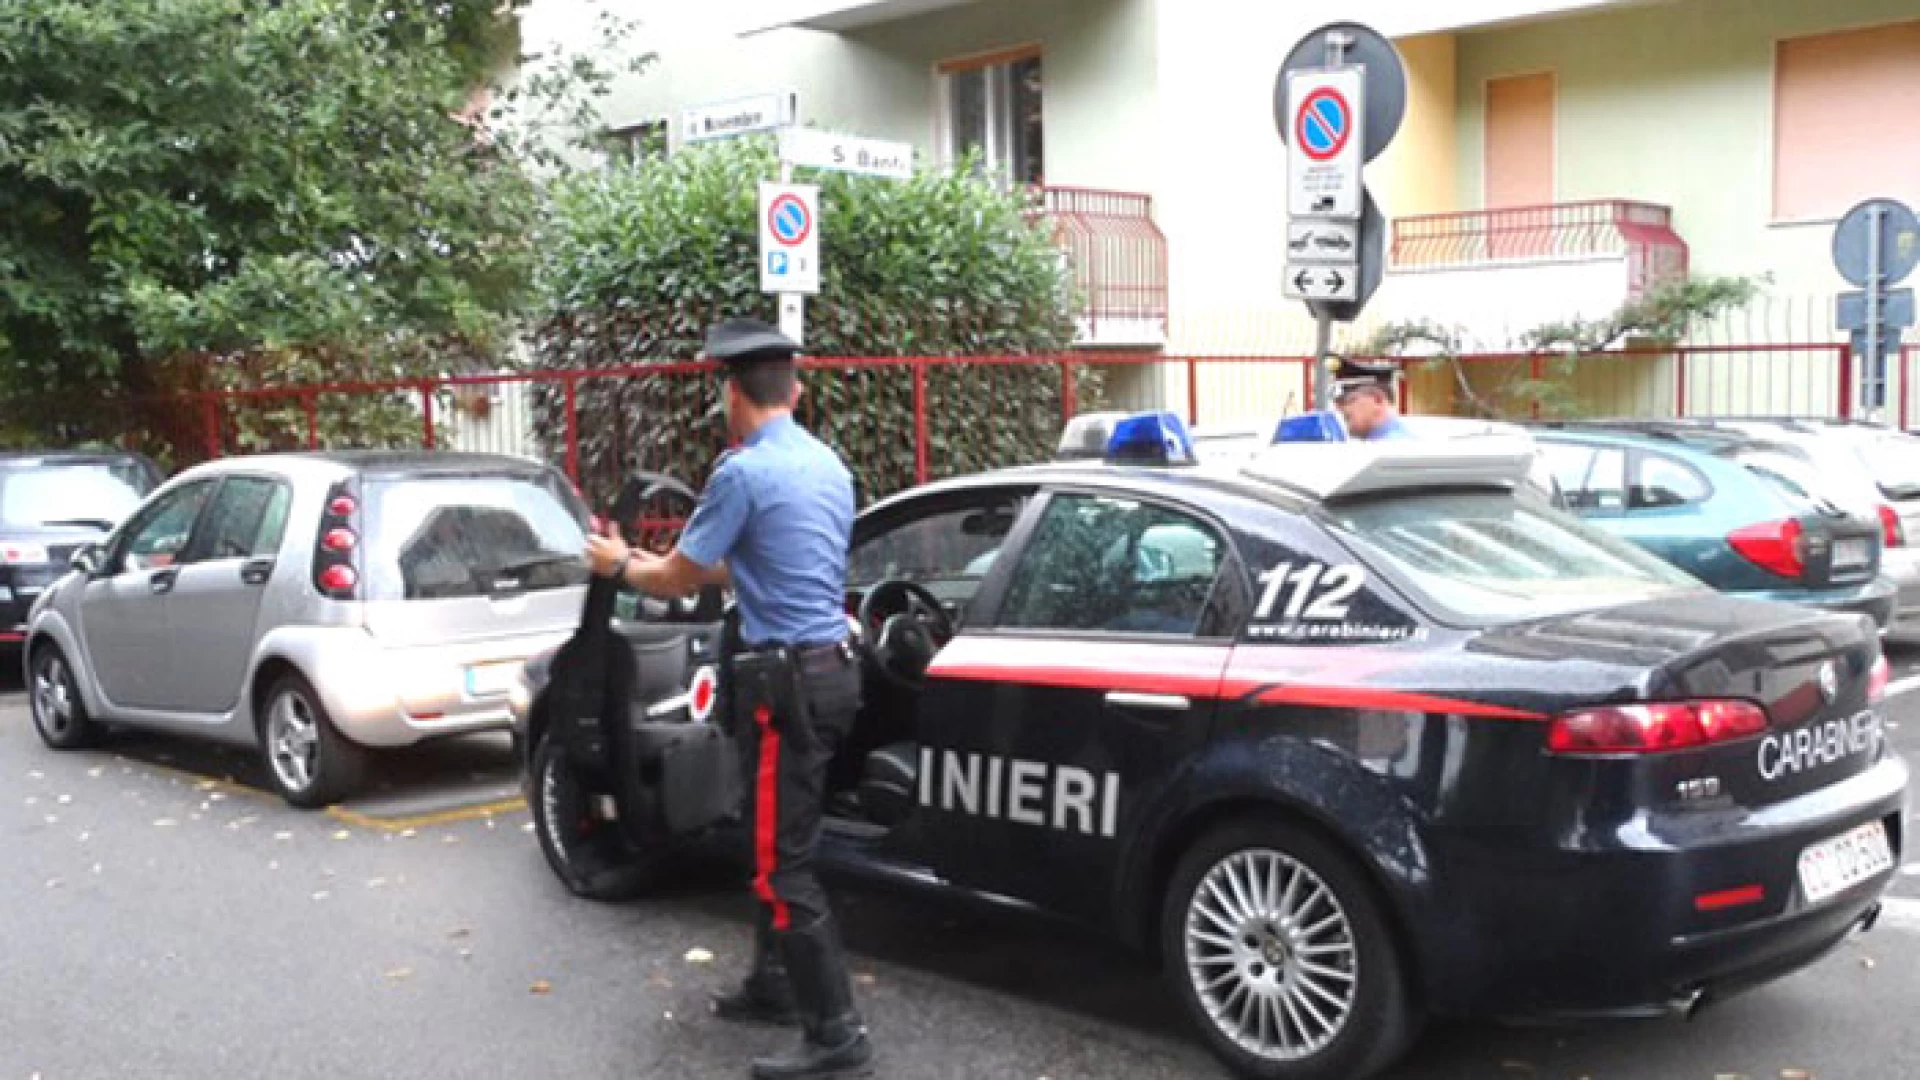 Montaquila: dubbi su false residenze. I Carabinieri denunciano due persone.